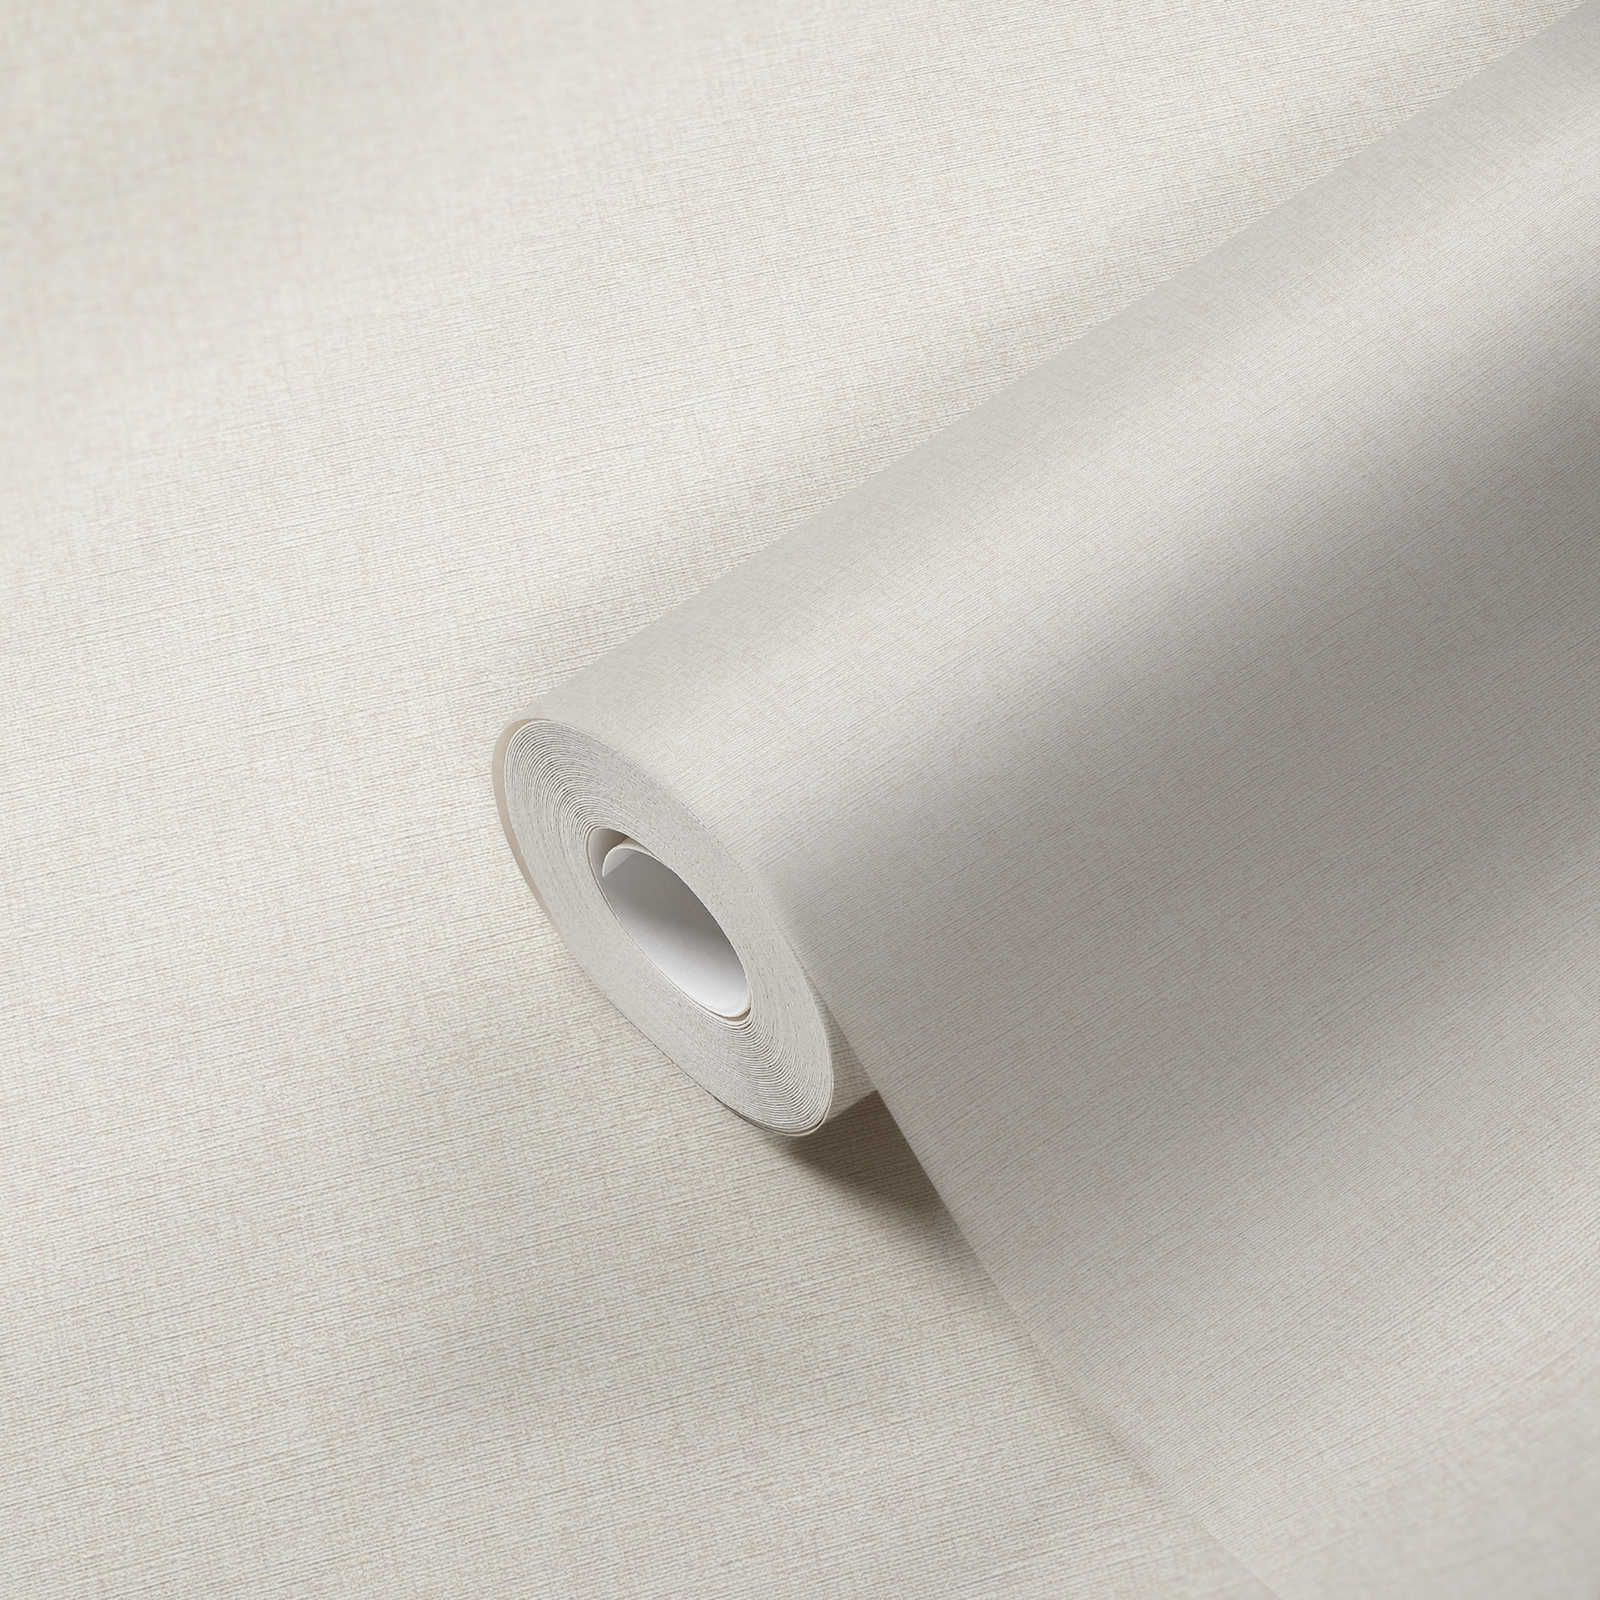             Papel pintado tejido-no tejido liso con diseño de estructura, mate - crema, blanco
        